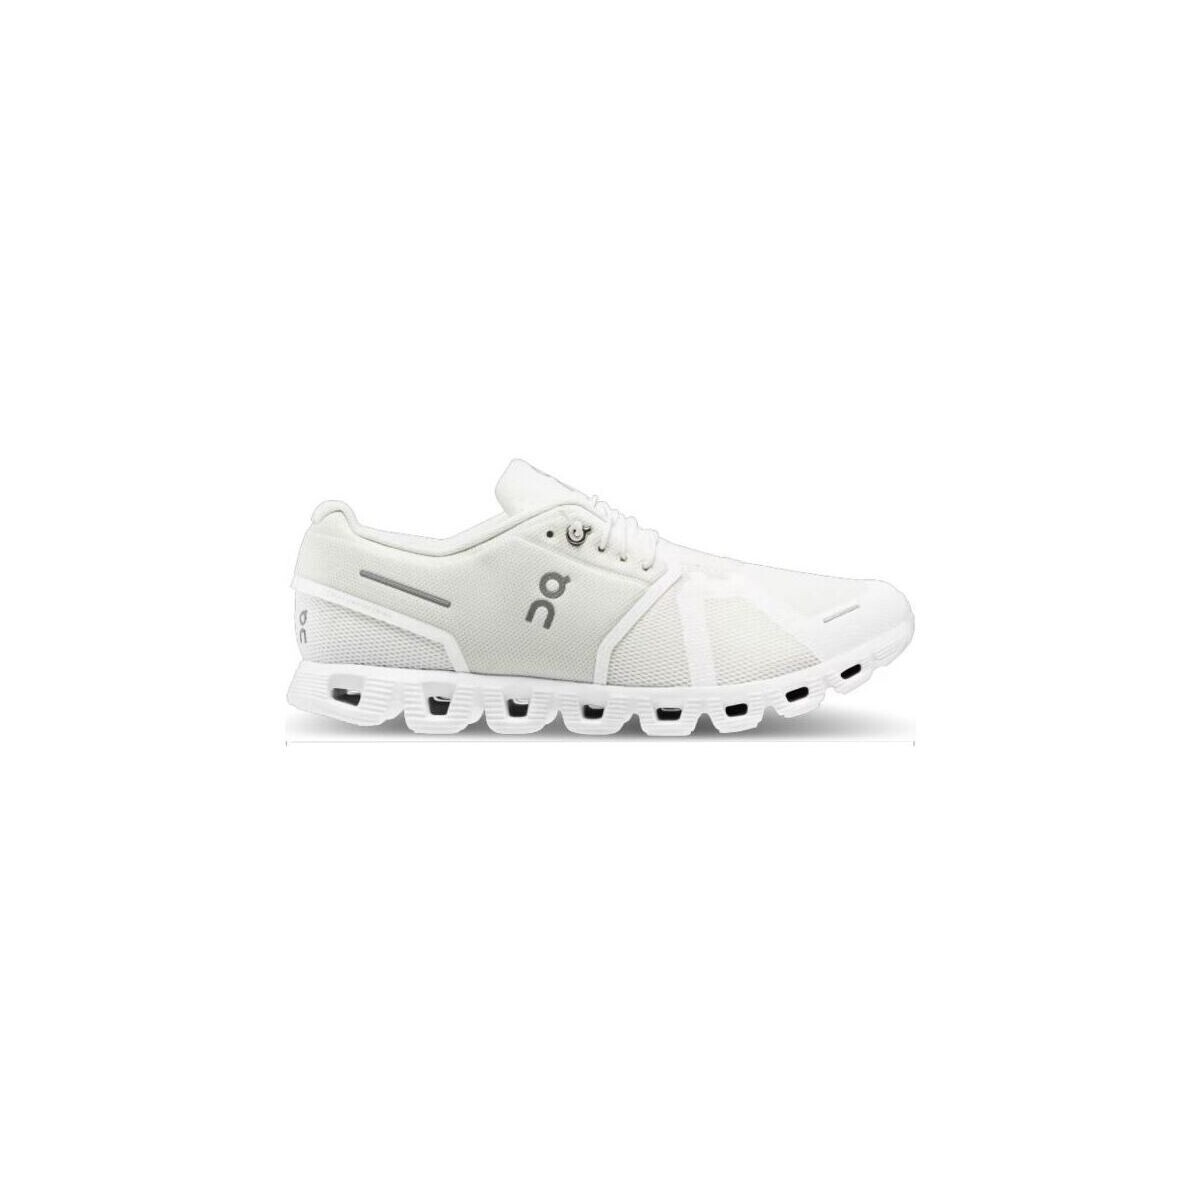 Zapatos Hombre Deportivas Moda On Running Zapatillas Cloud 5 Hombre Undyed-White/White Blanco